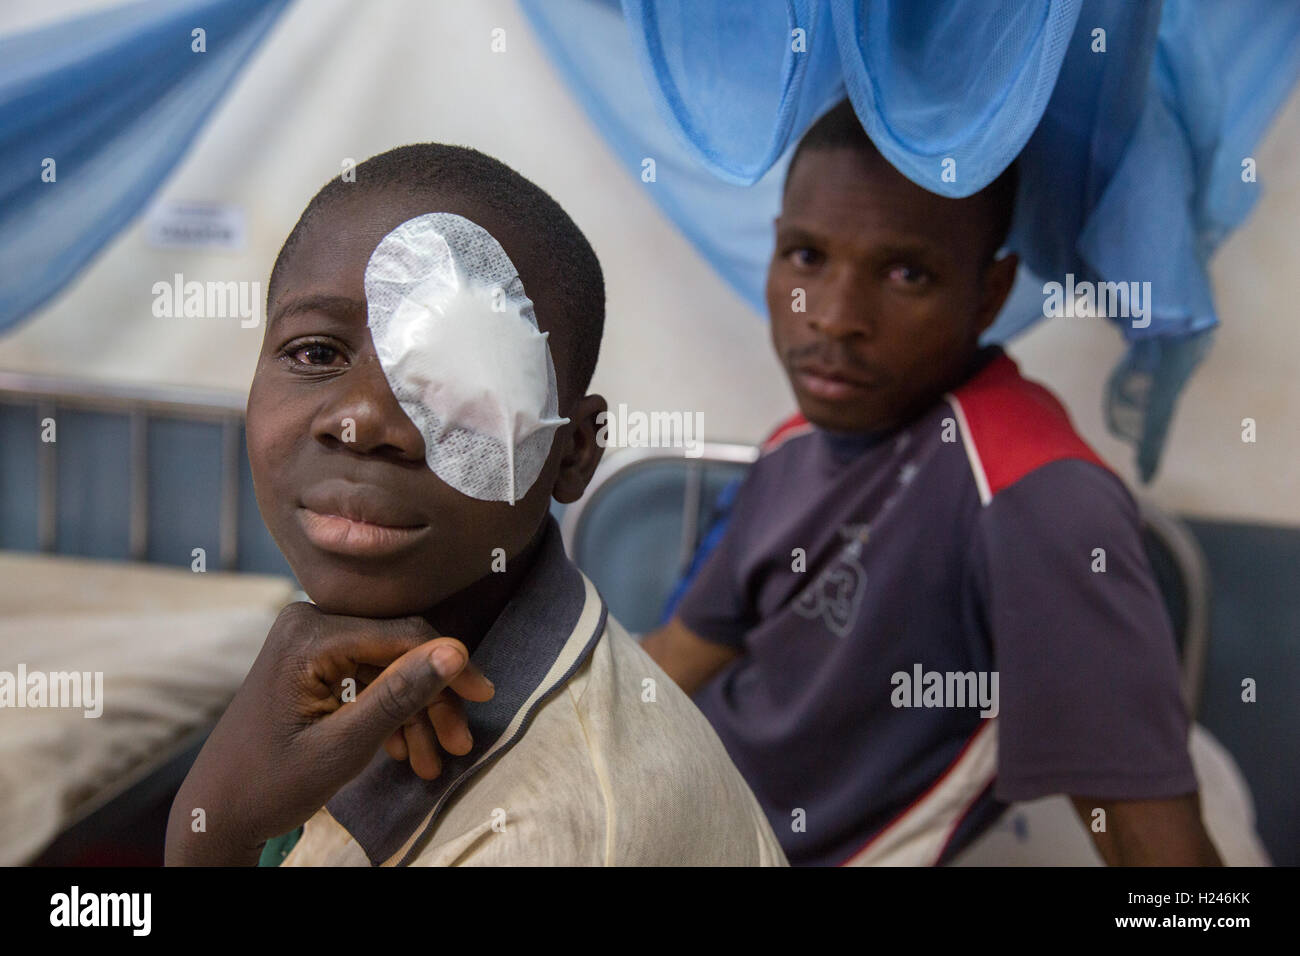 Hôpital Ribaue, Ribaue, province de Nampula, Mozambique, Août 2015 : Saide Antonio, 16 ans, aura le bandage enlevé de son œil gauche demain après sa deuxième opération pour cataractes bilatérales. Photo de Mike Goldwater Banque D'Images